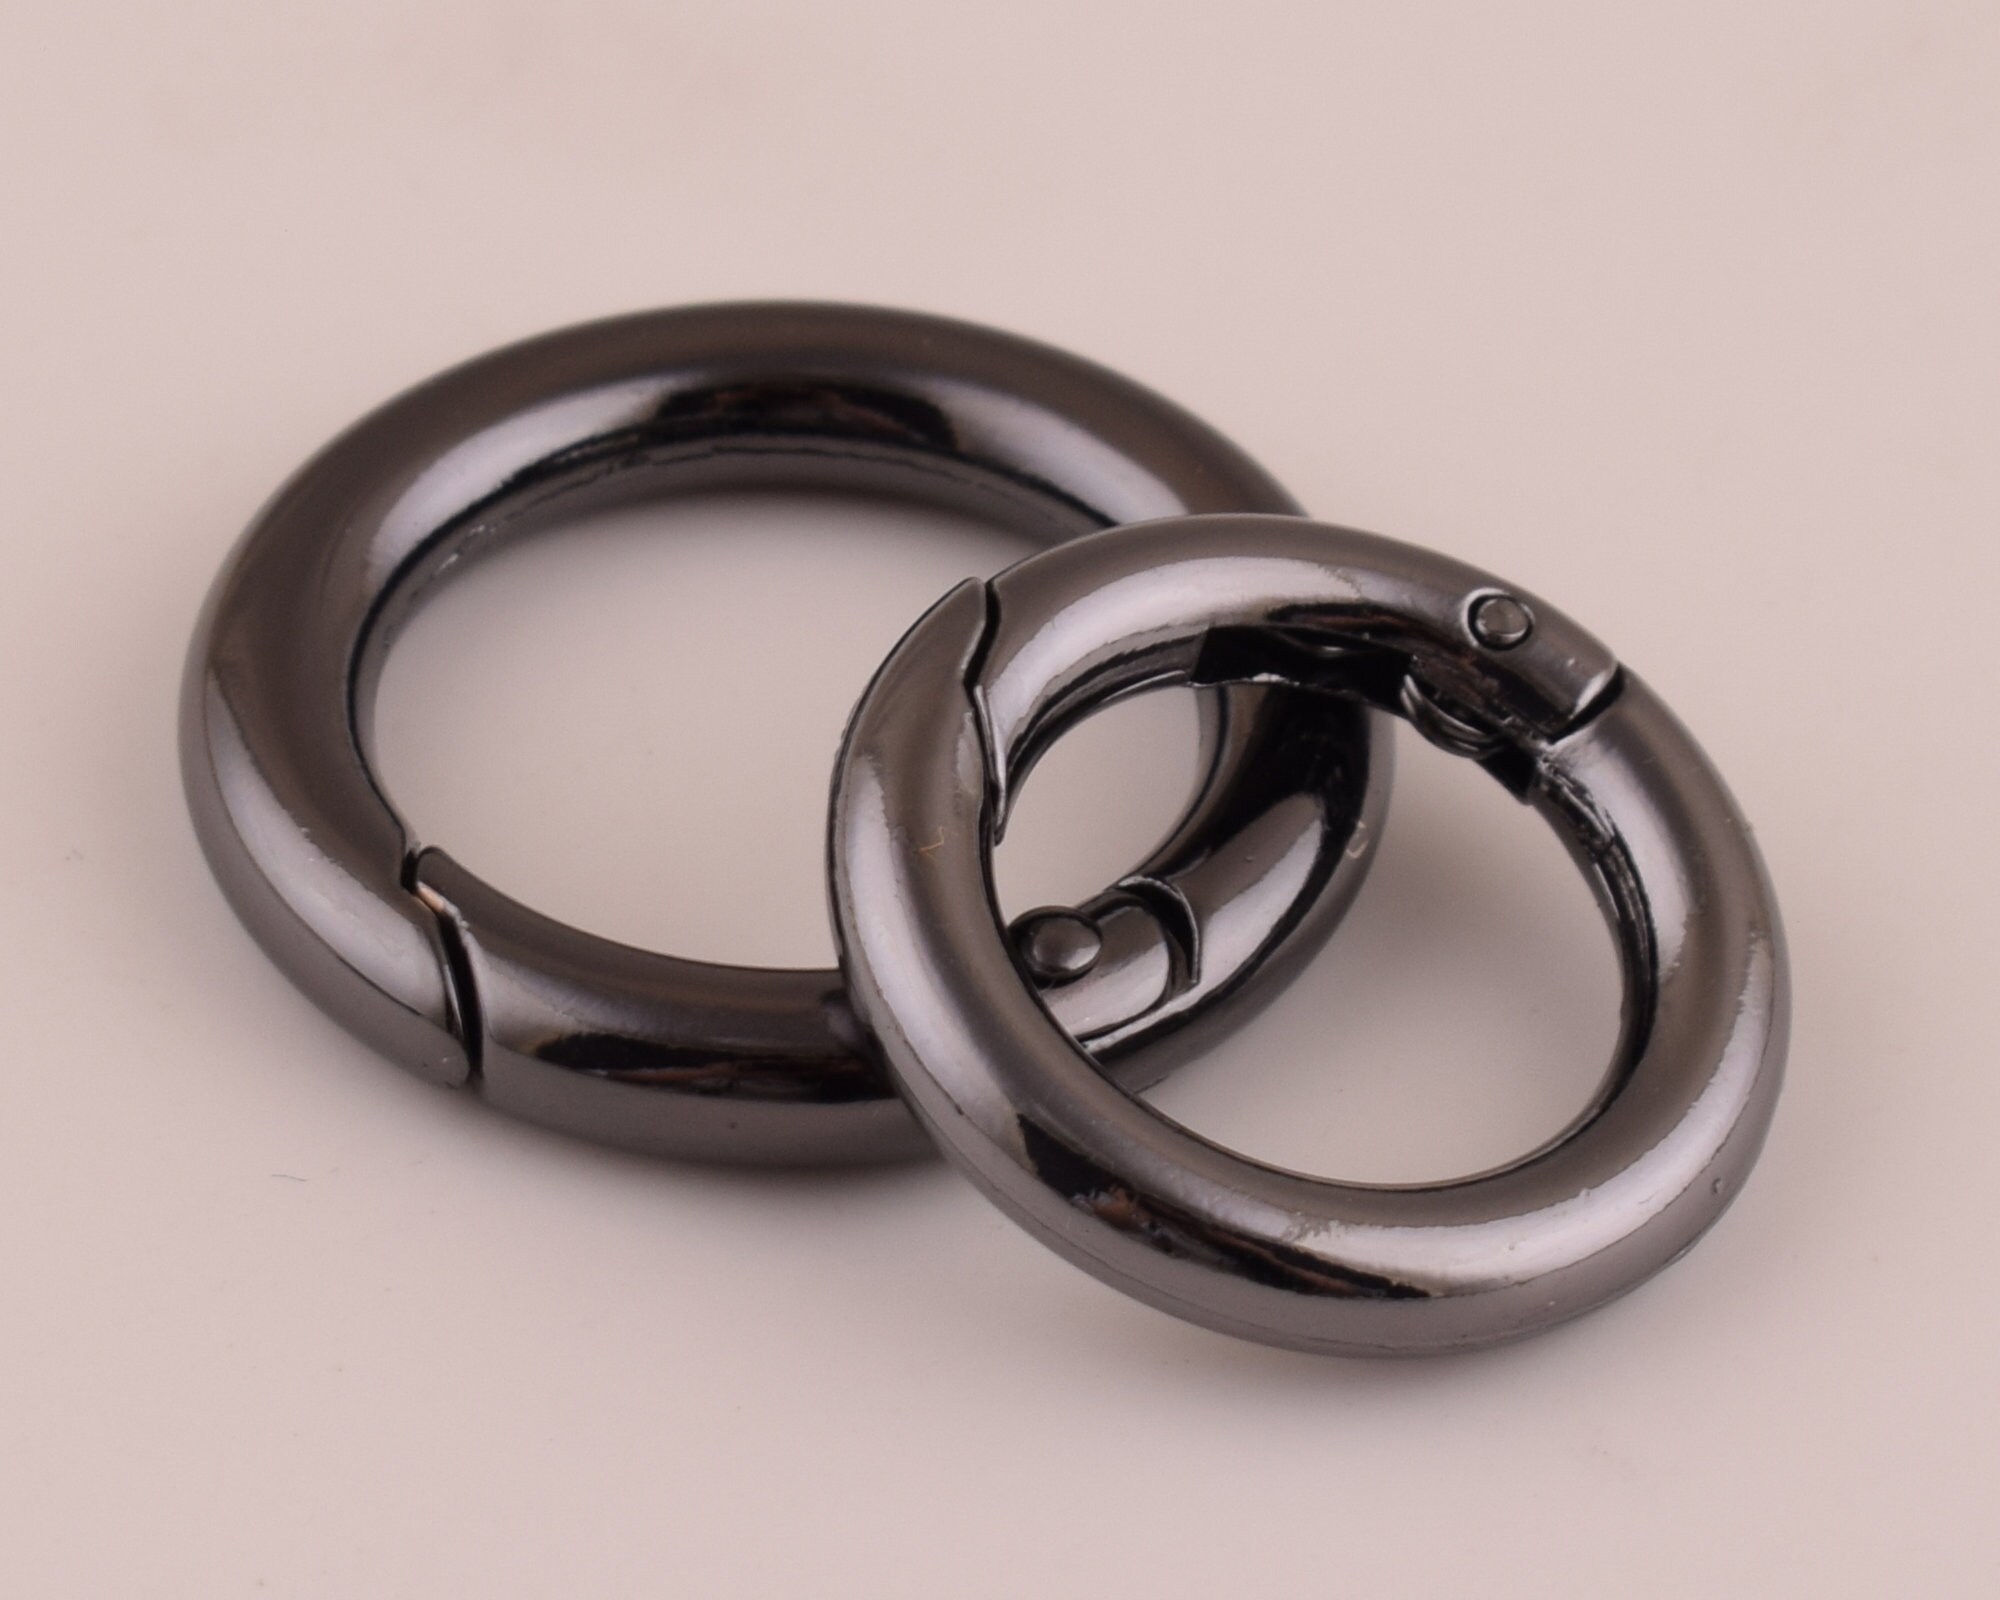 CRAFTMEMORE Metal O Ring Spring Opening Purse Making Snap Angle-Edge  O-Rings Clip Key Ring Holder 2pcs SCOF (1 1/2 Inch, Gunmetal) Inside  Diameter 1 1/2 Inch Gunmetal